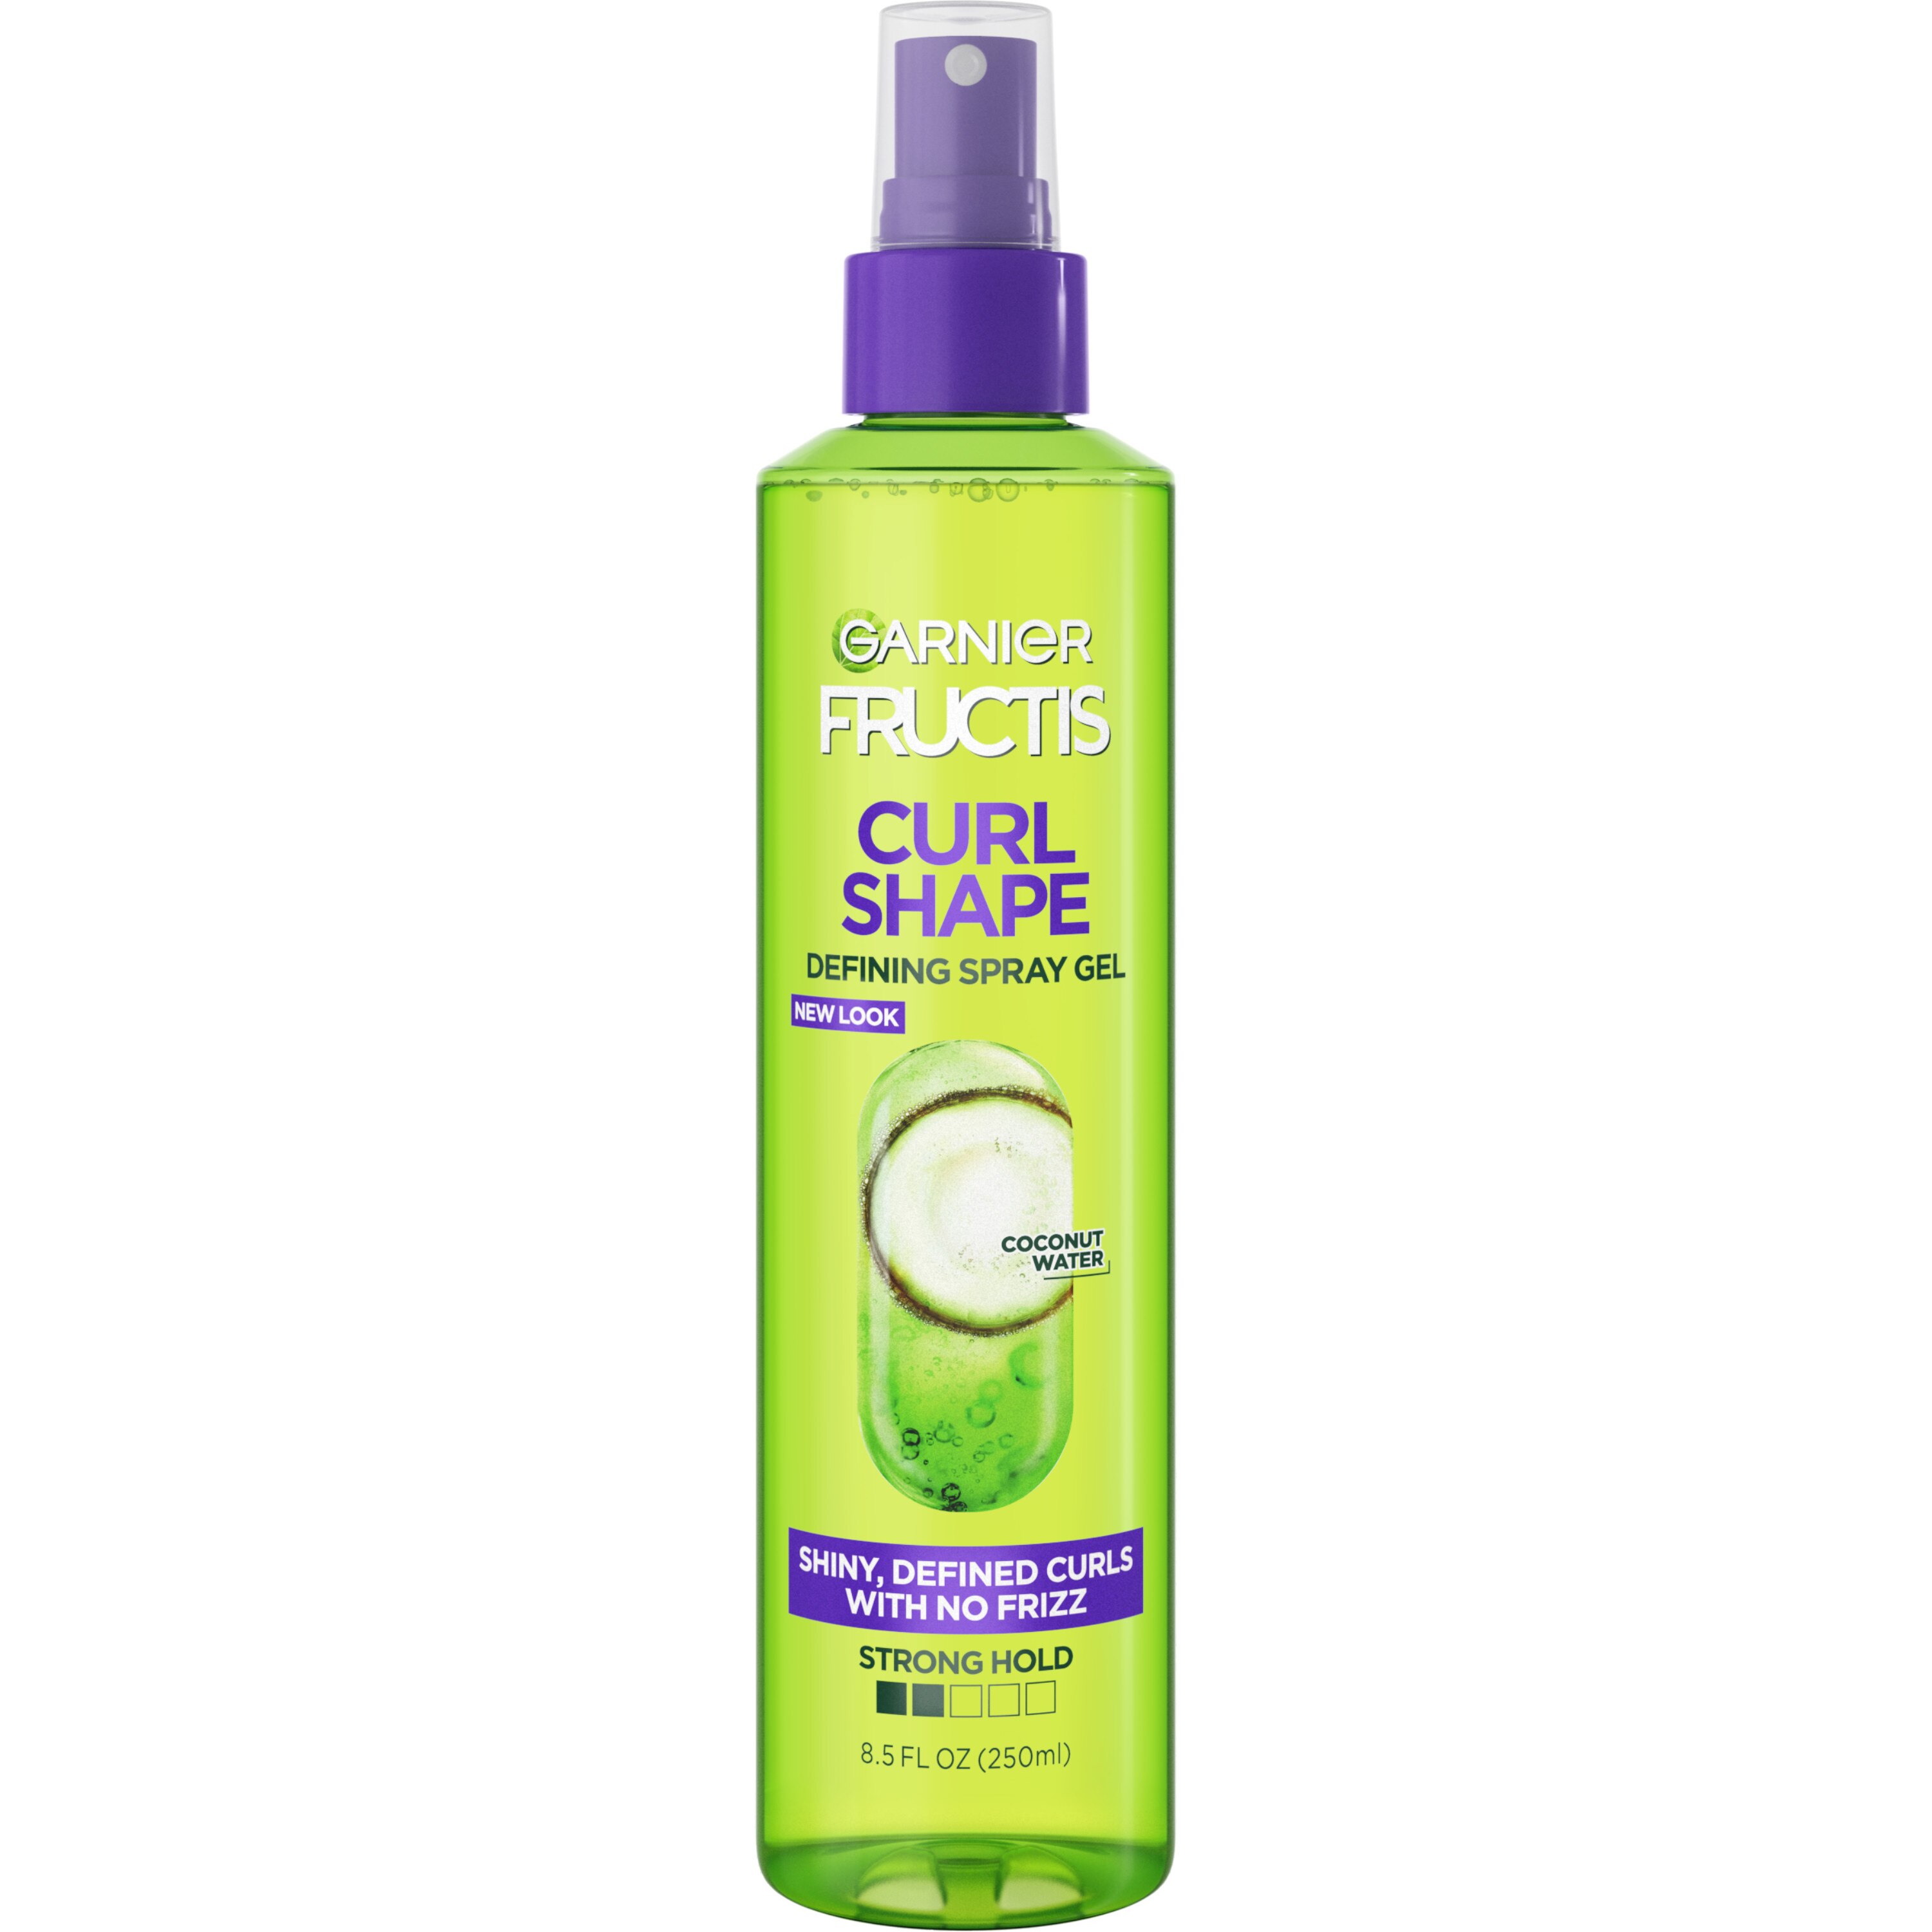 Garnier Fructis Curl Shape Spray Gel, 8.5 OZ